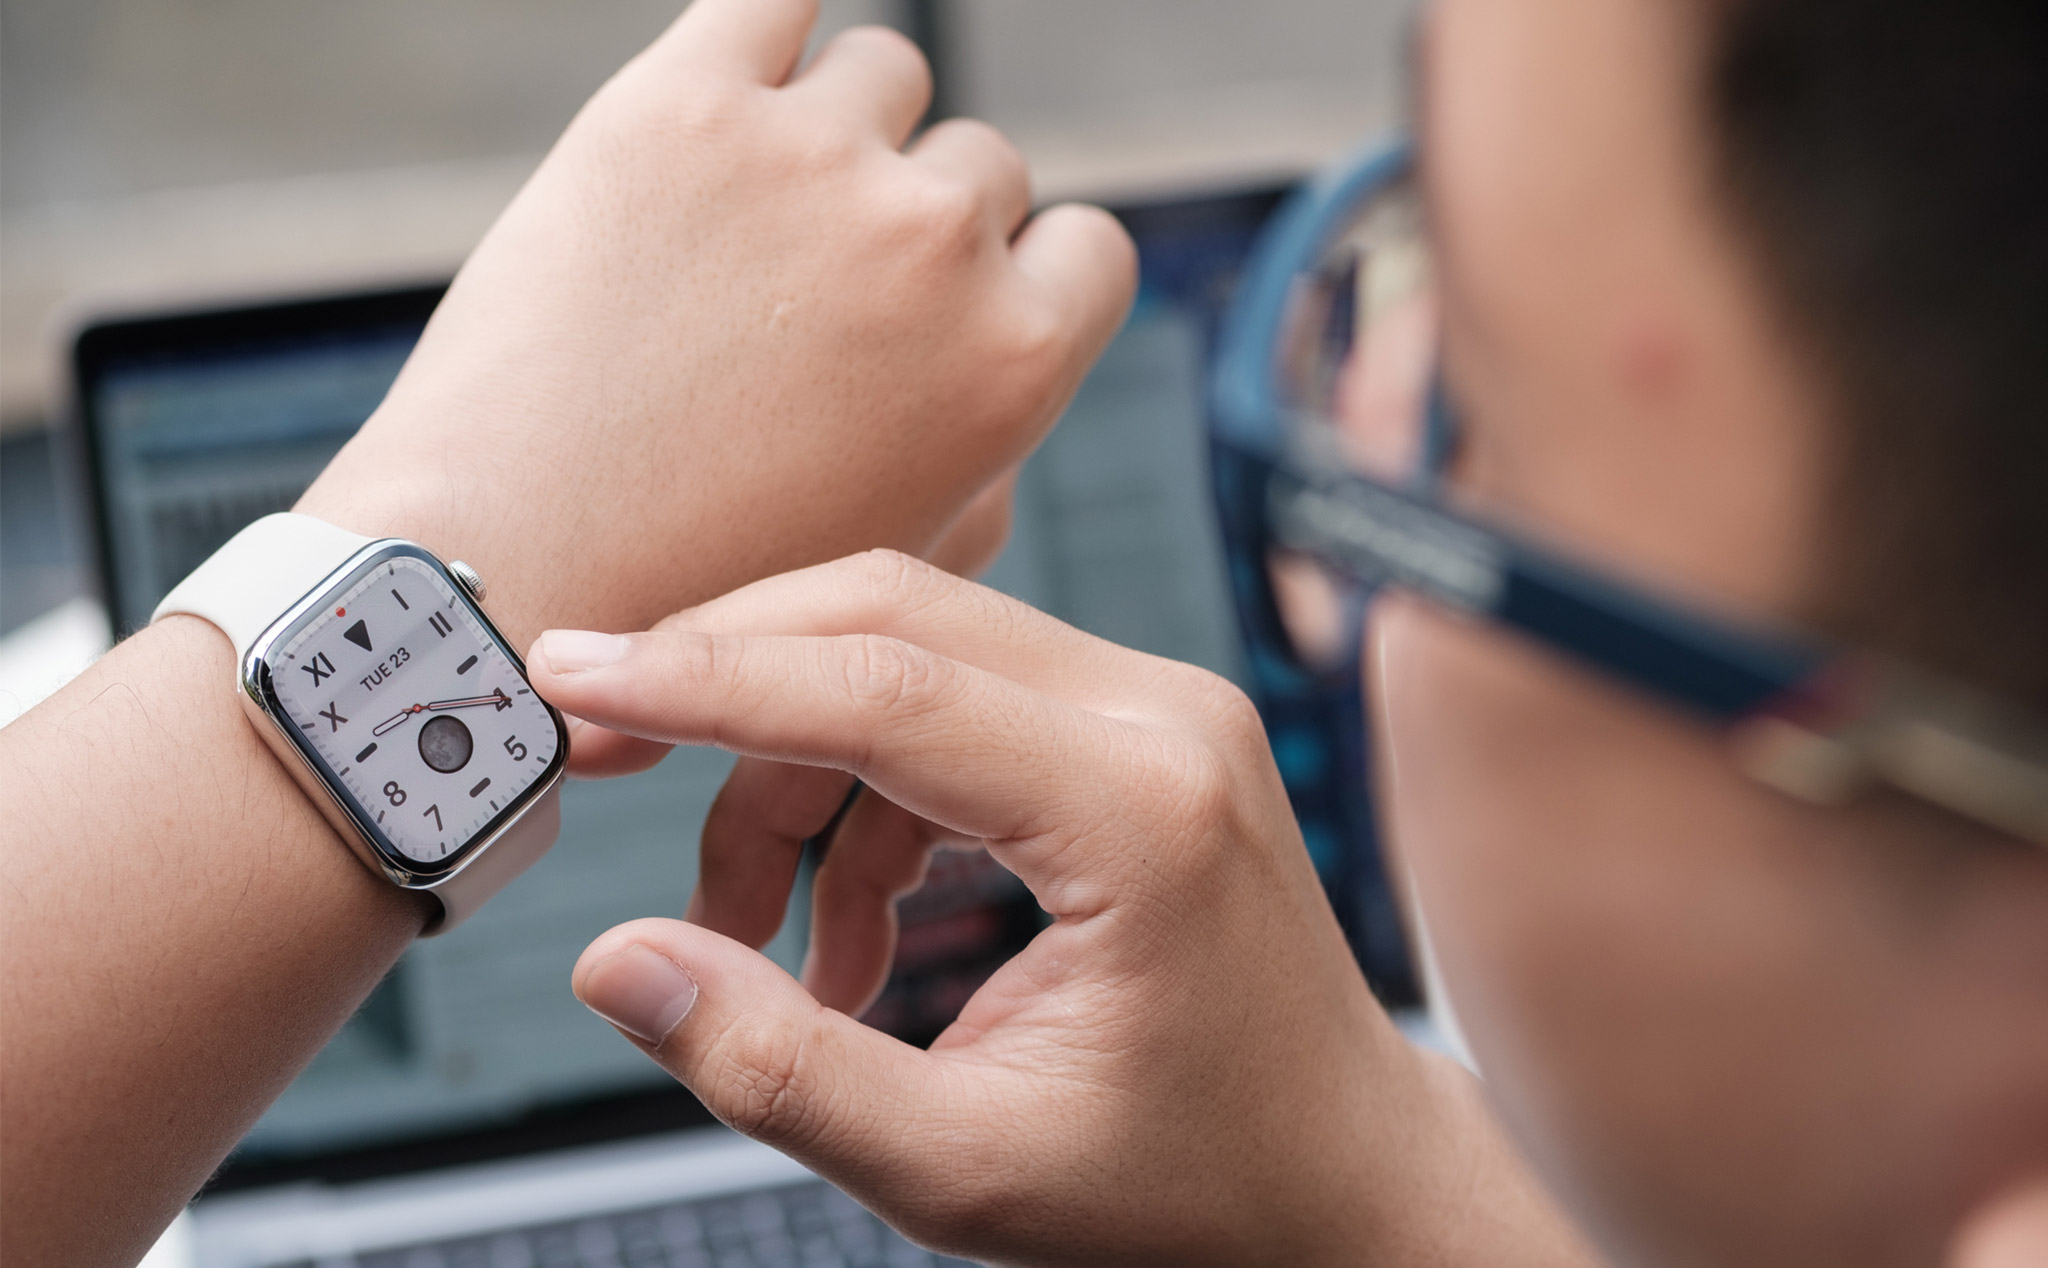 Cách để Apple Watch tự thay đổi mặt đồng hồ theo giờ hoặc theo địa điểm